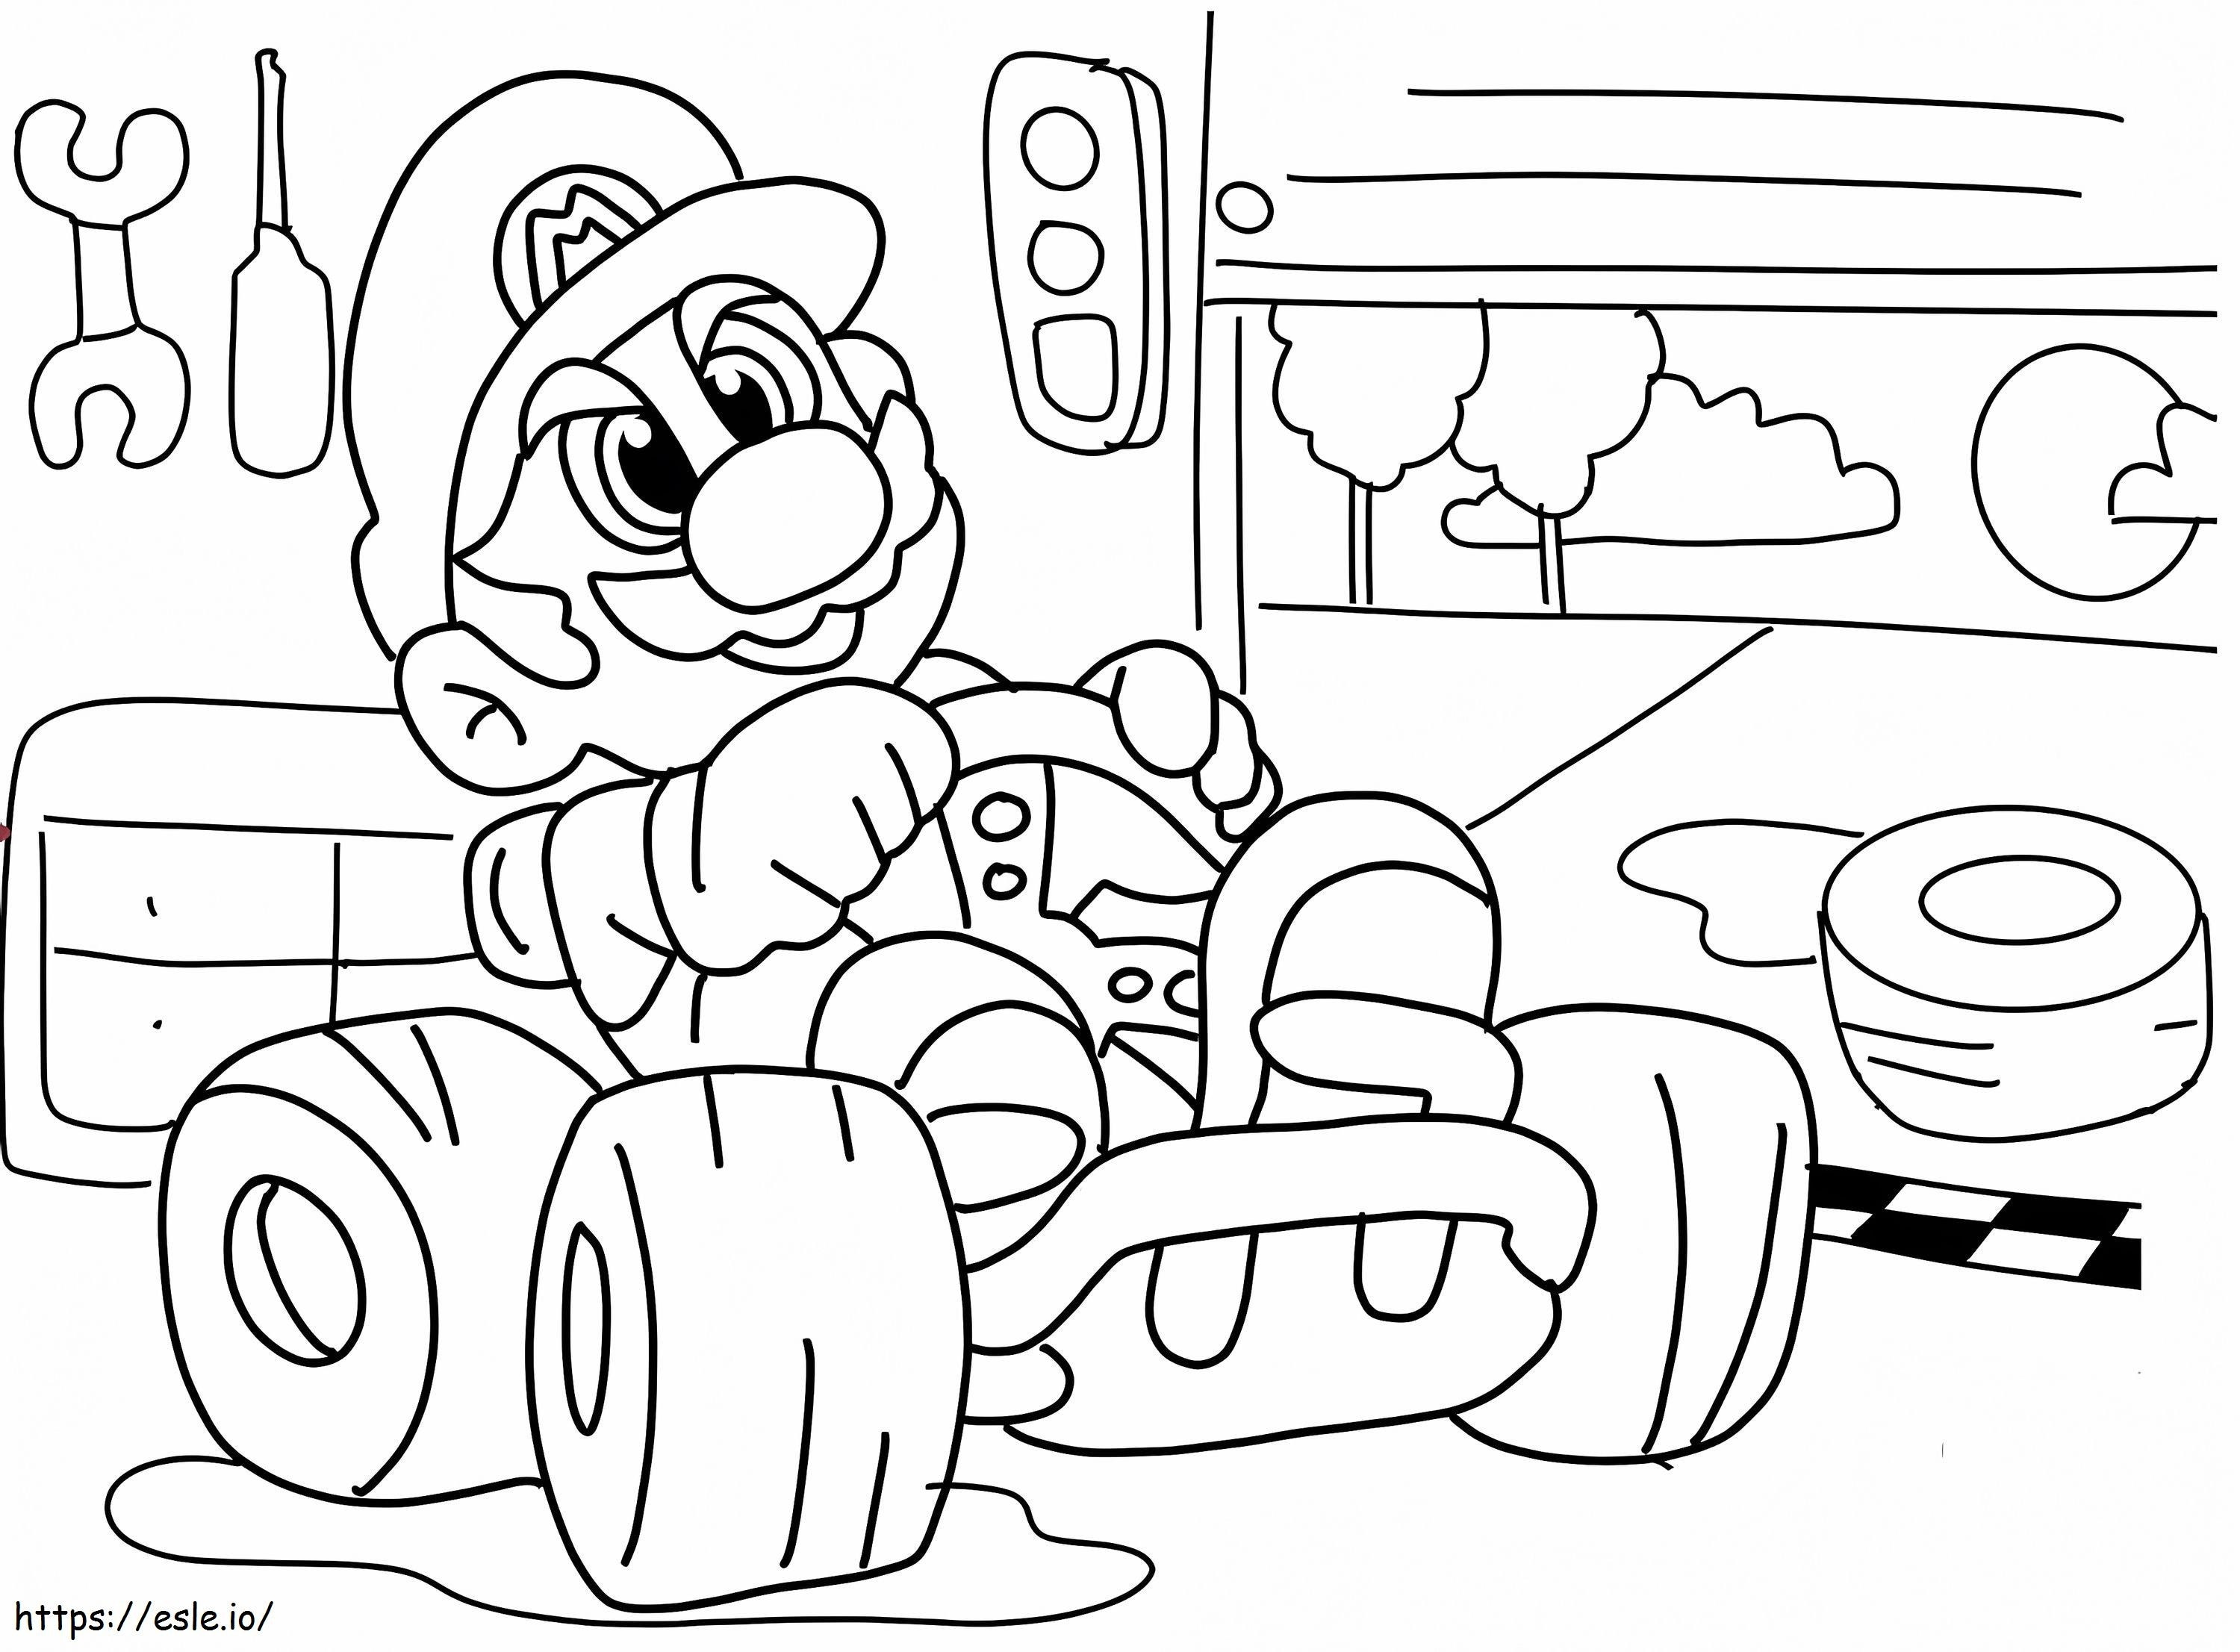 Coloriage Super Mario Racing à imprimer dessin